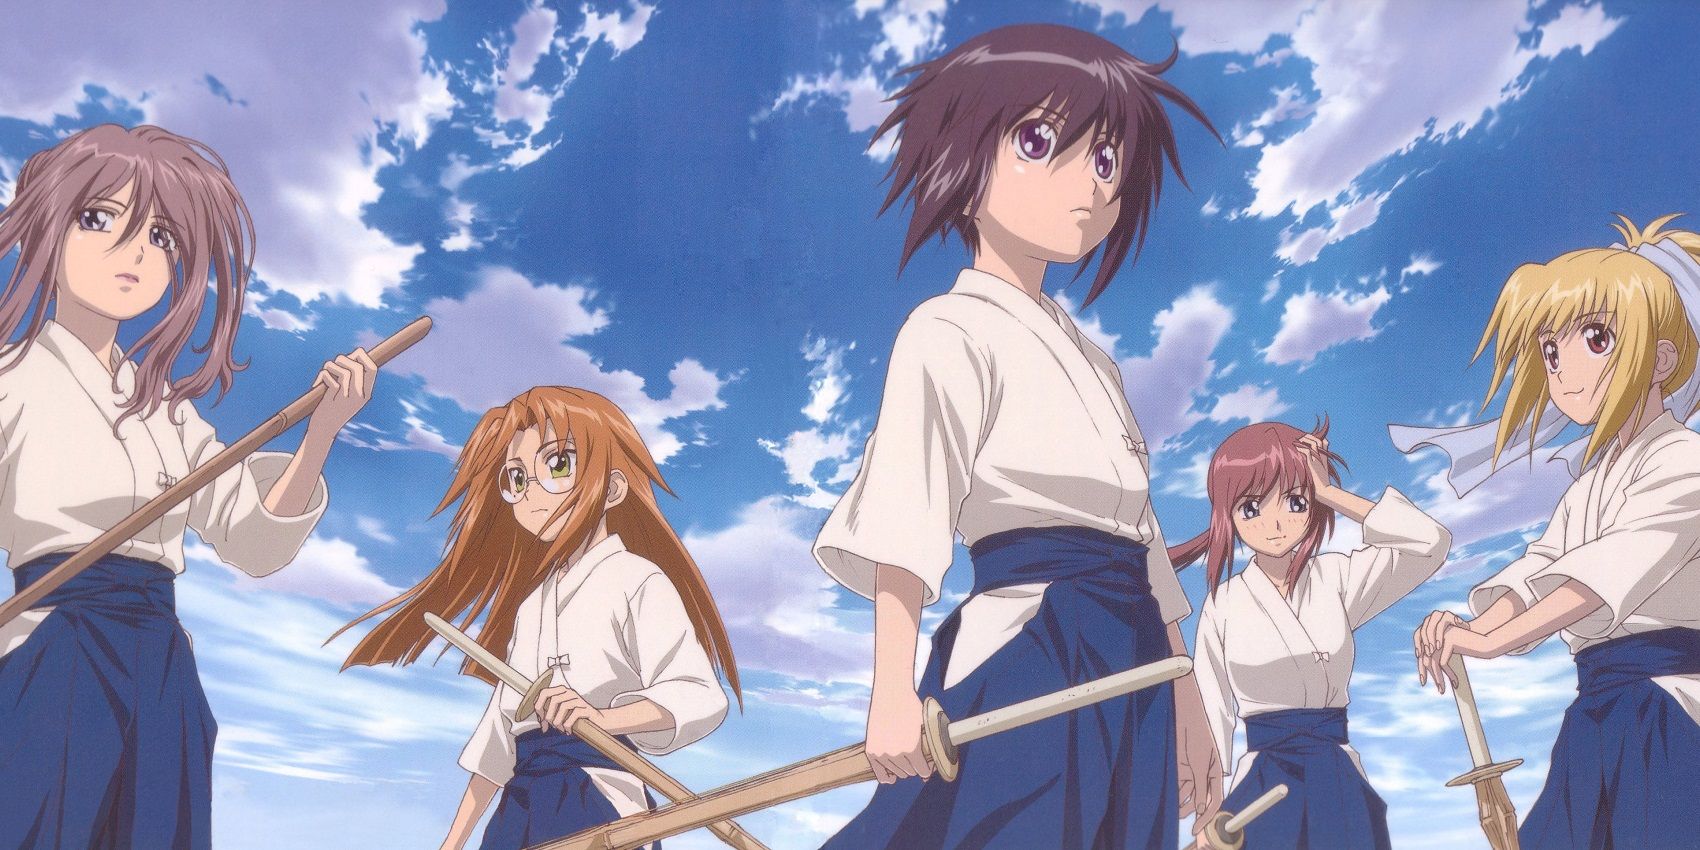 Image of Tamaki, Kirino, Miyako, Sayako, and Satori.